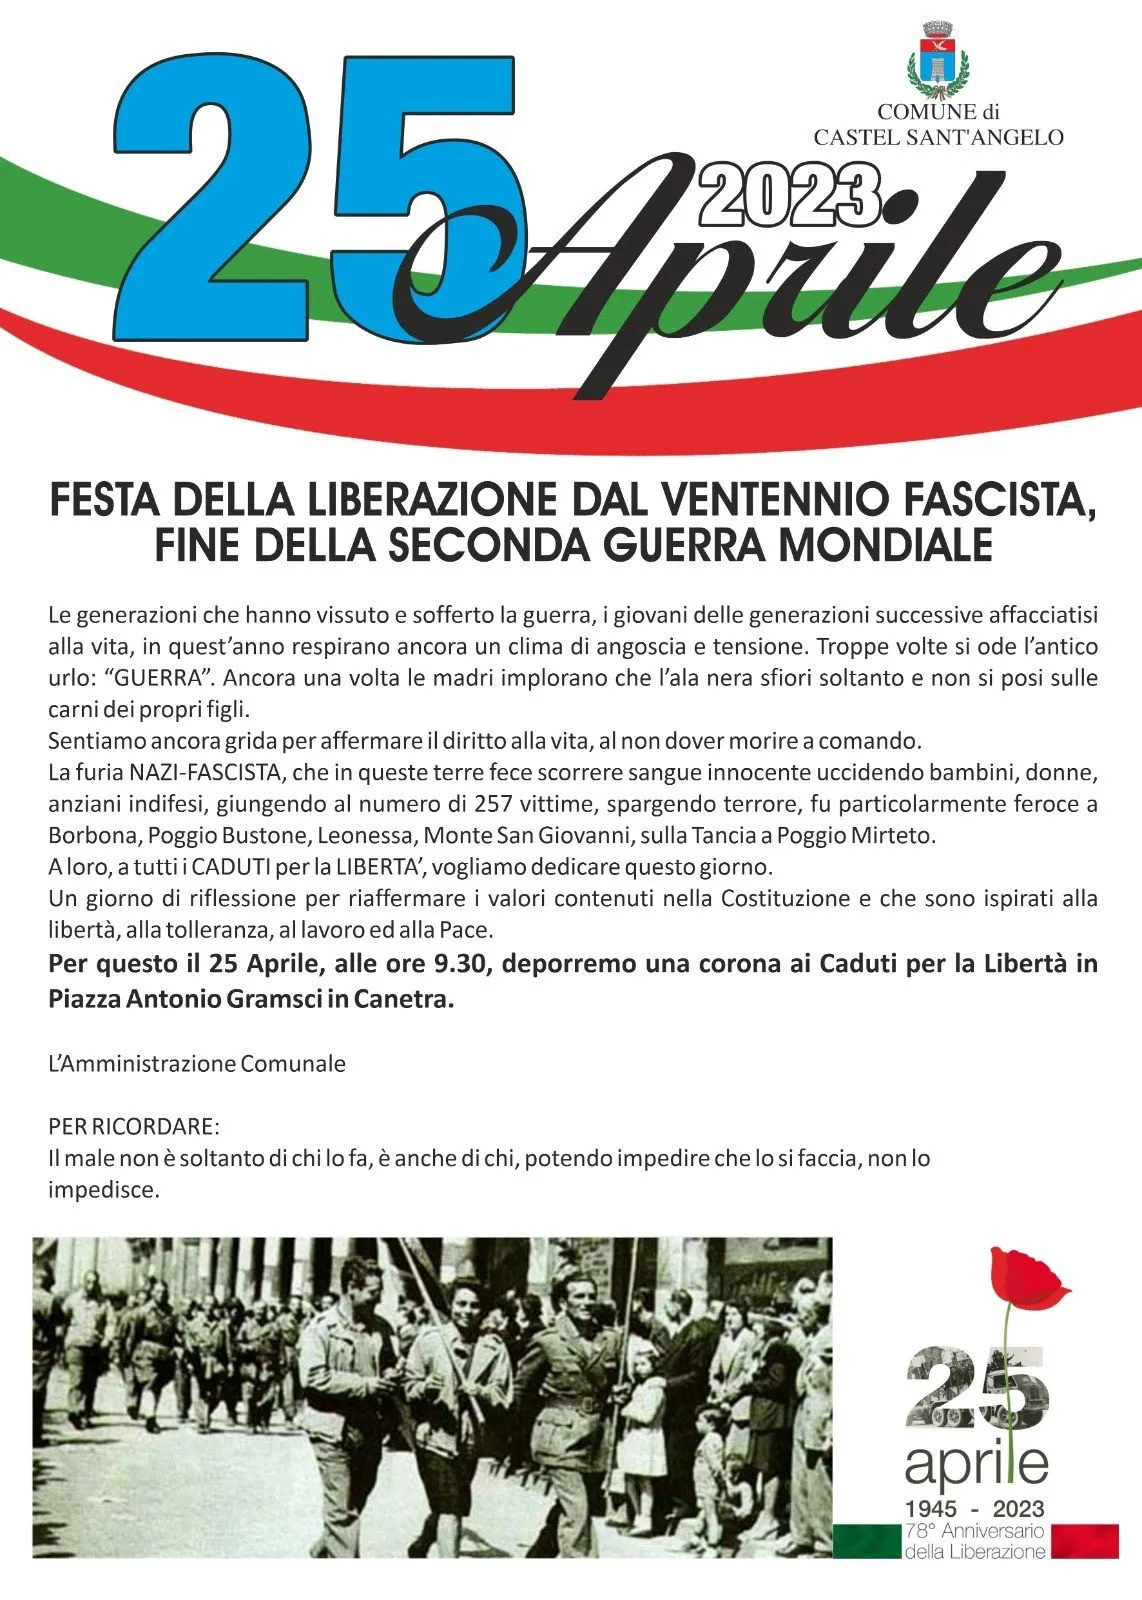 Deposizione Corona caduti  25 aprile 2023 - Festa della liberazione dal ventennio fascista